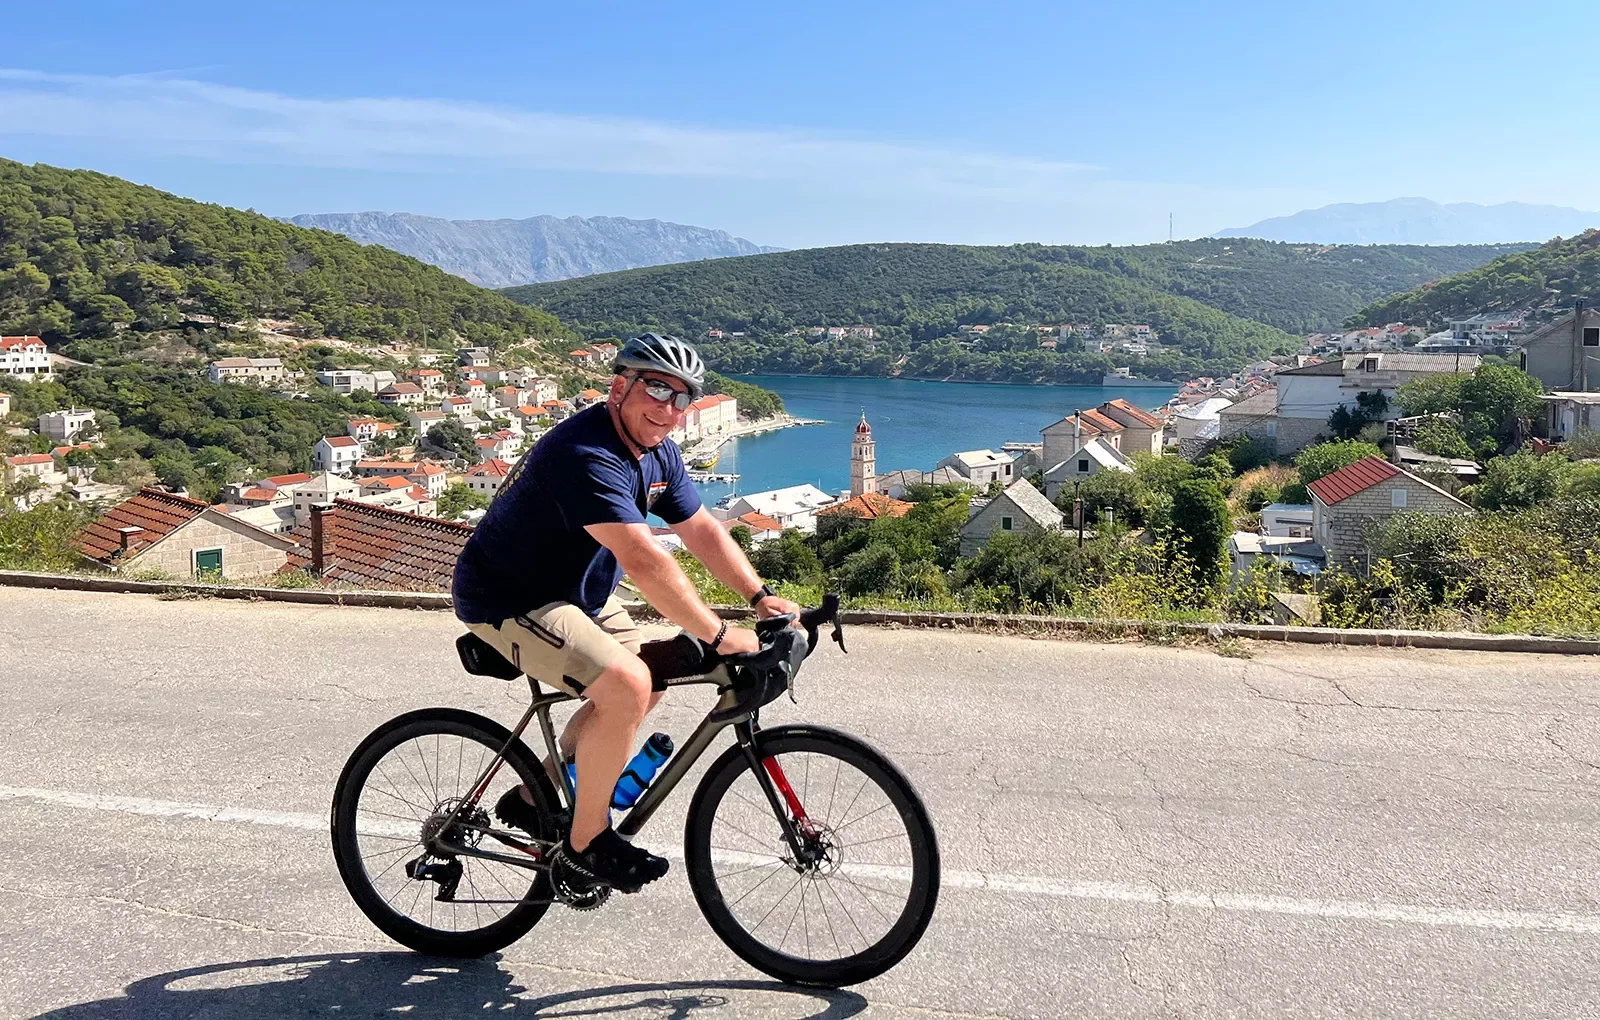 Guest cycling past Croatian riverside town.